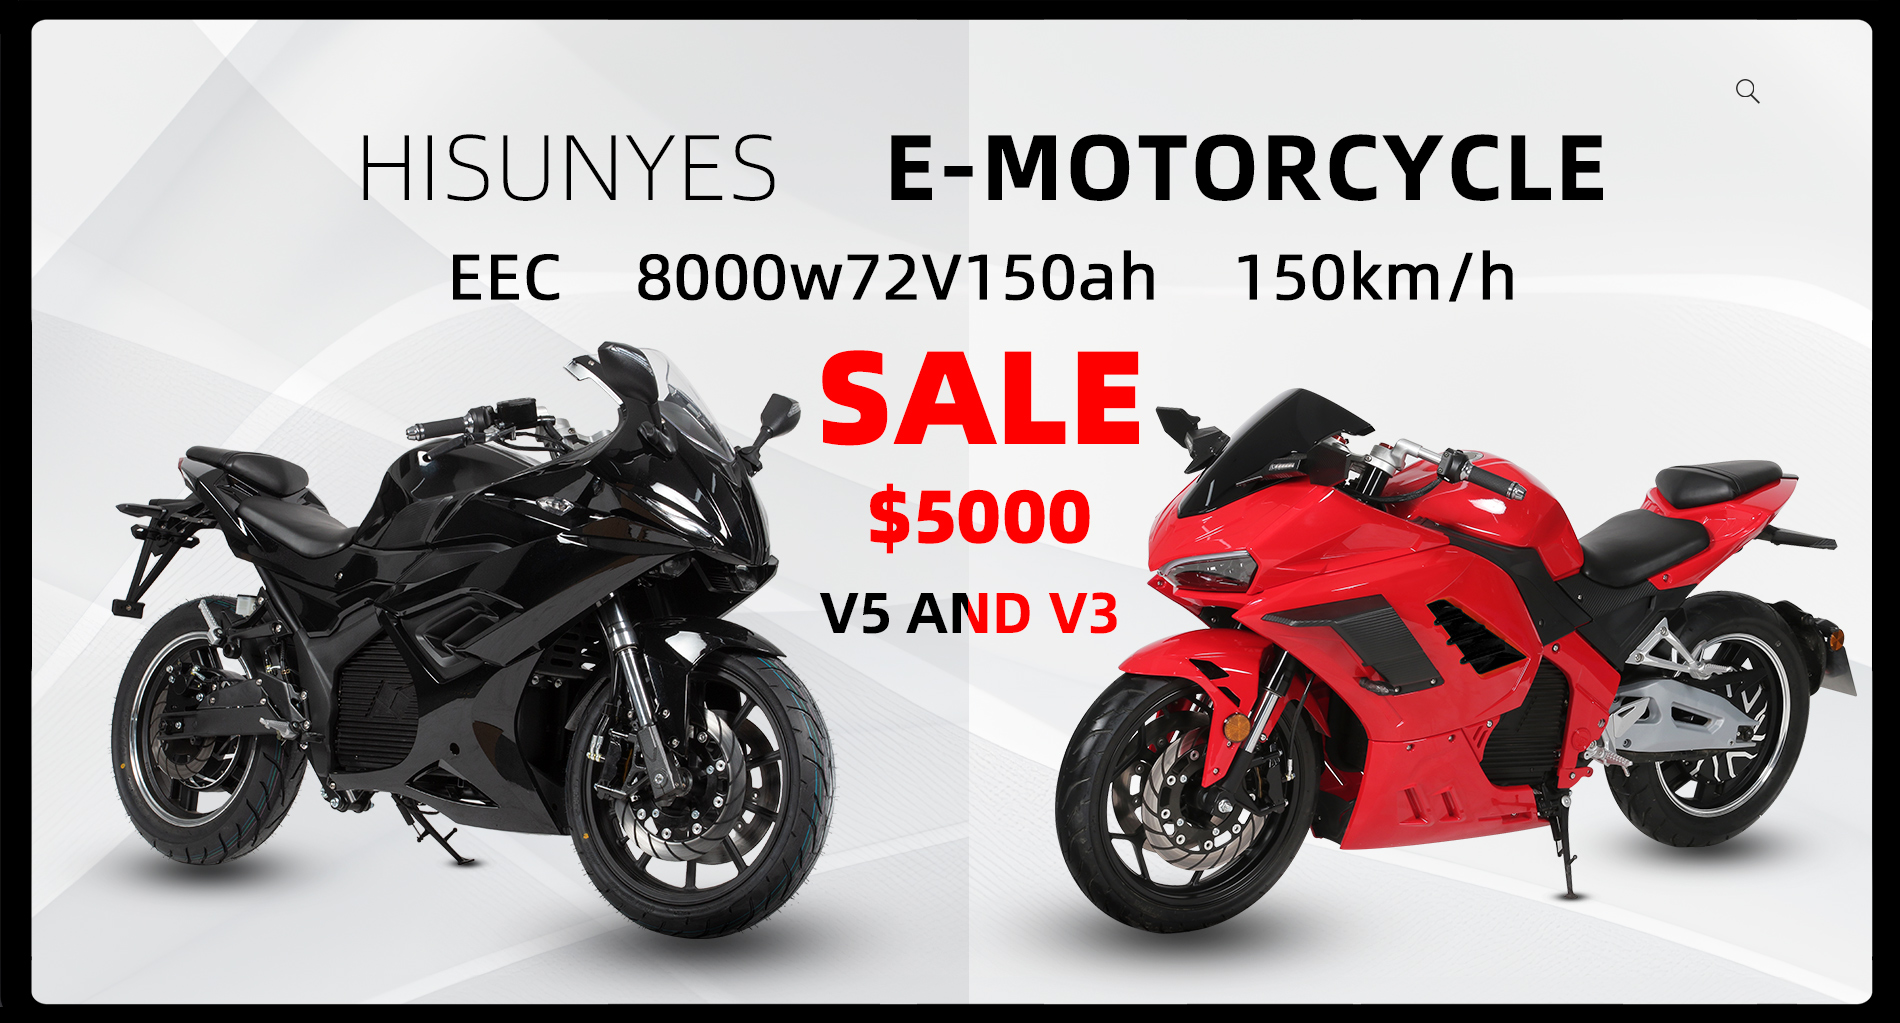 A motocicleta elétrica V3 e V5 estão em grande venda